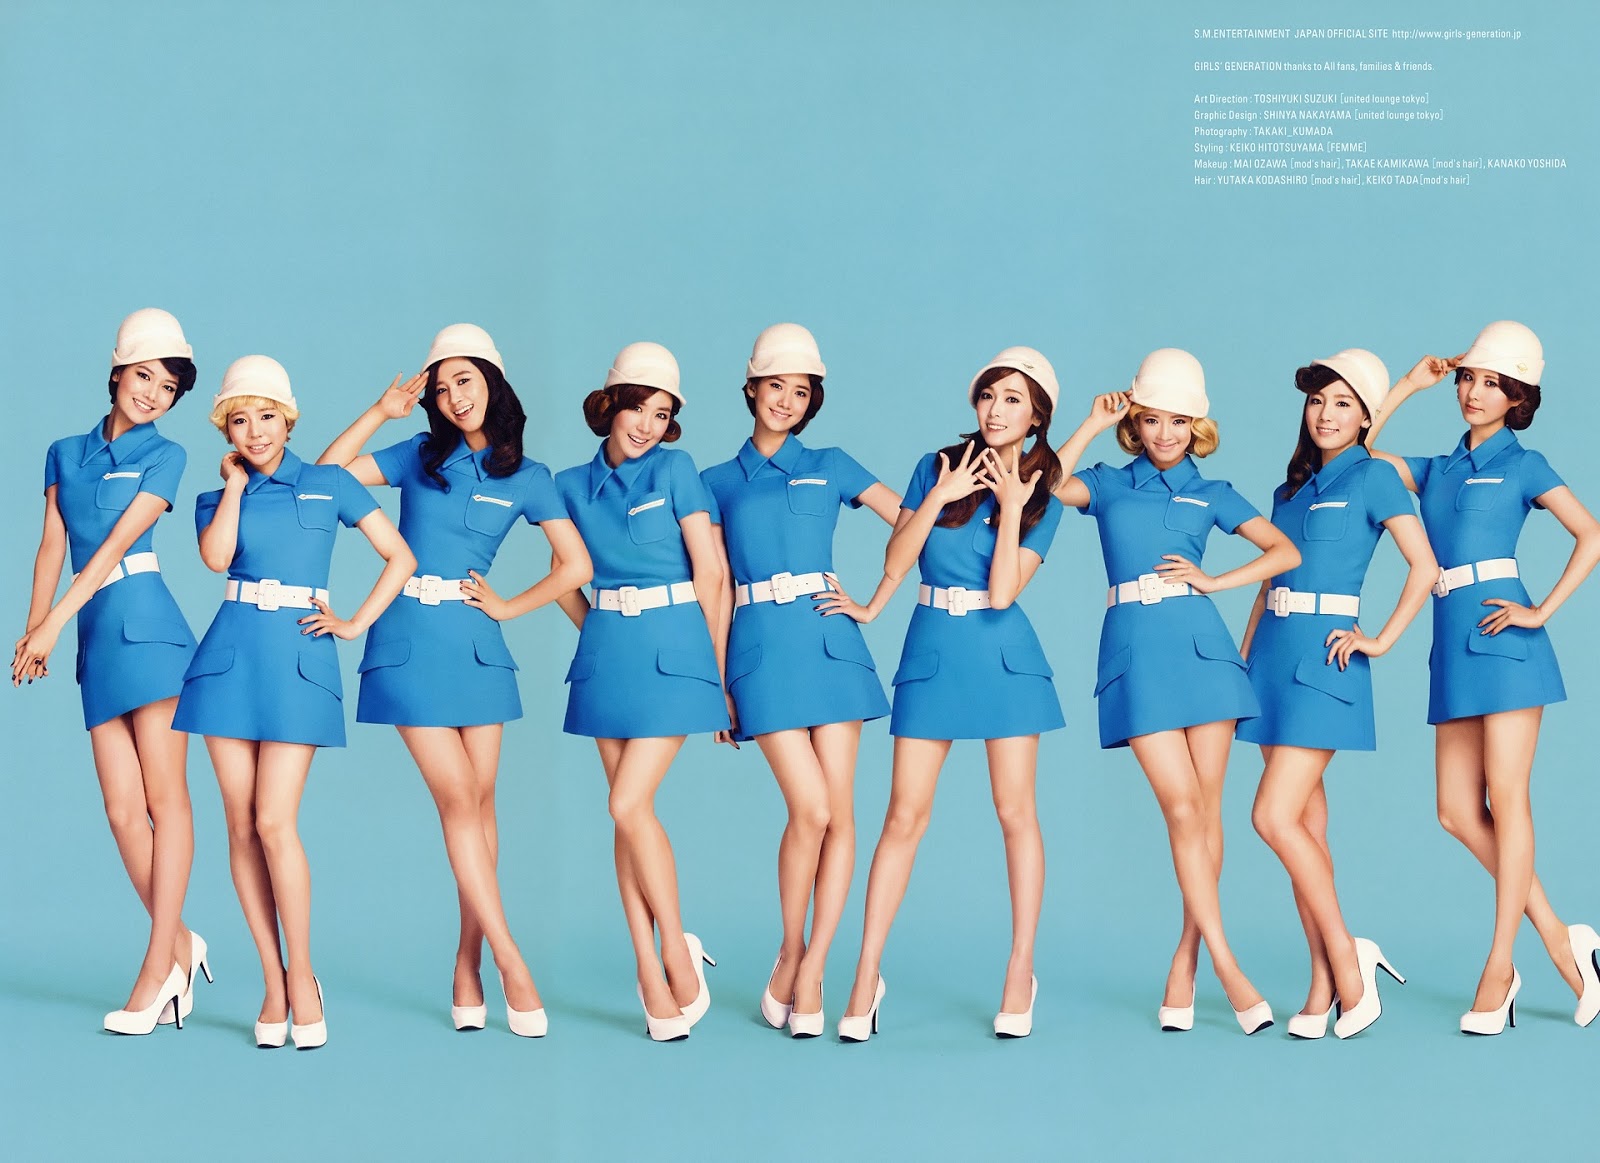 Girls' Generation - Girls & Peace - allkpop forums